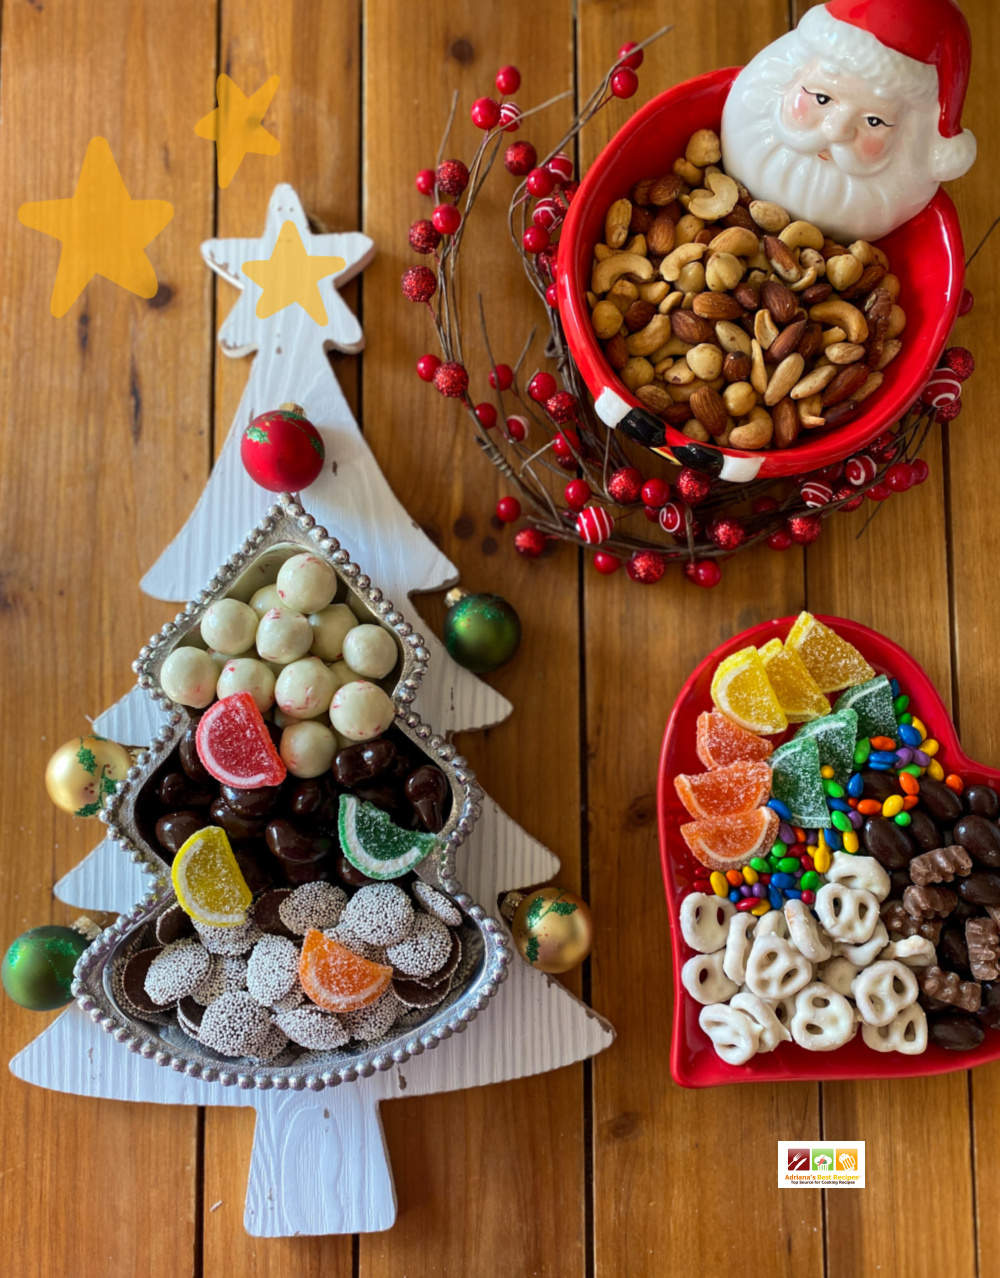 Tablero de dulces y botanas con temática navideña